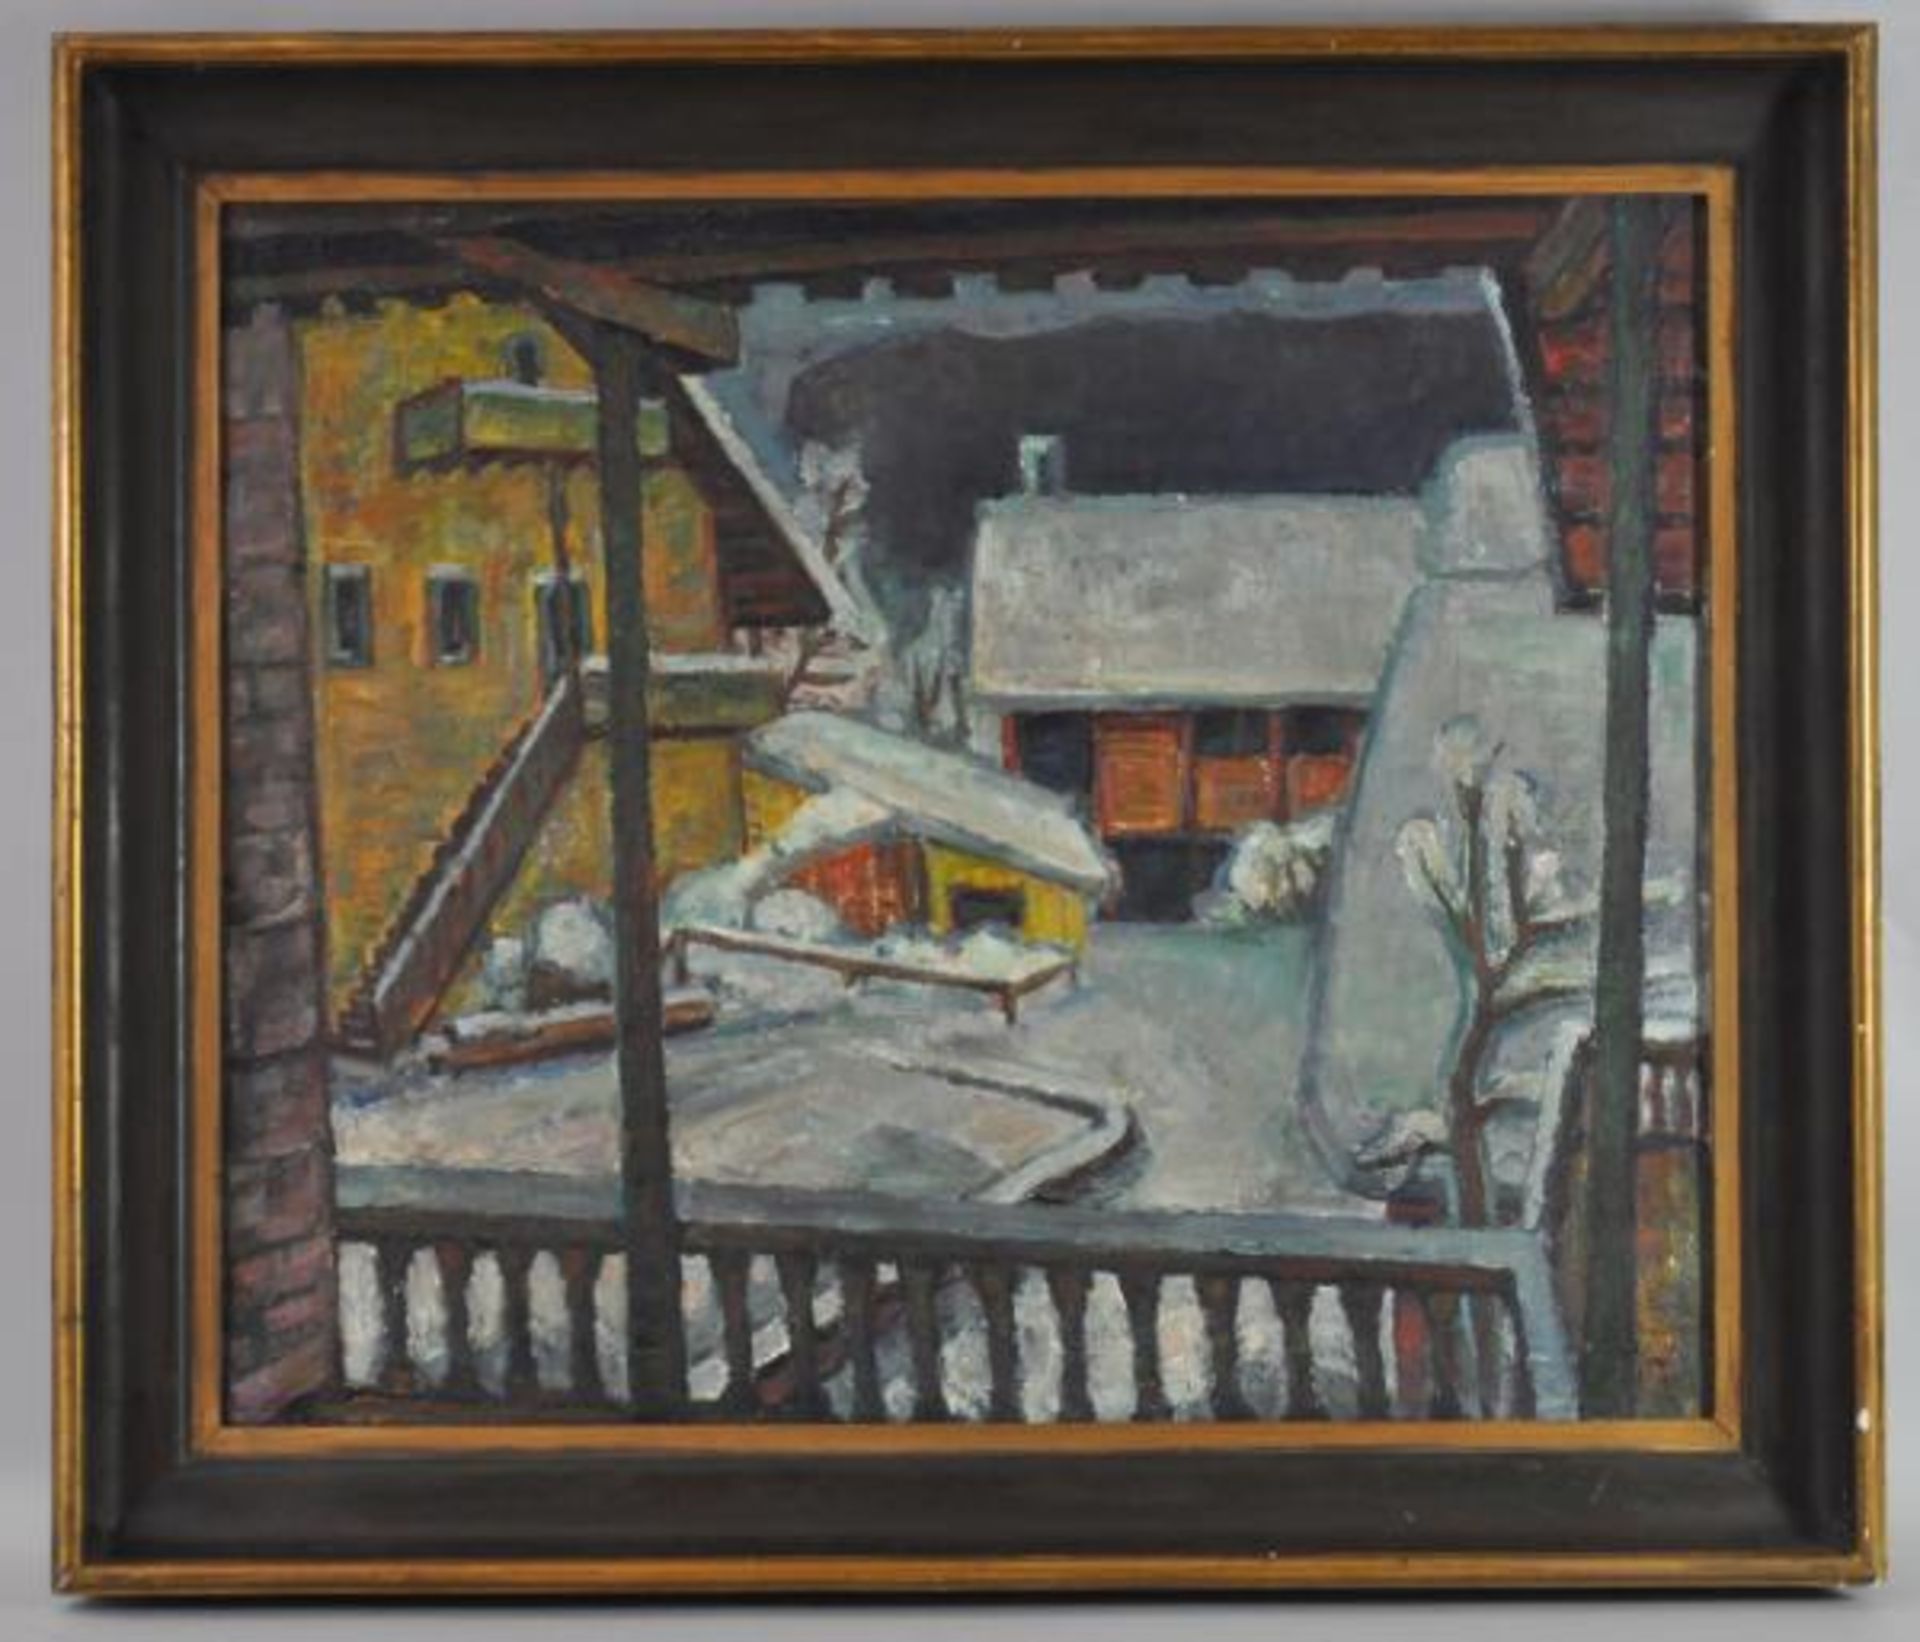 NOE Alfred (1903 Weiler/Höri - 2000 Karlsruhe) "Cortina" im Winter, Blick von Veranda auf Hof mit - Image 2 of 3